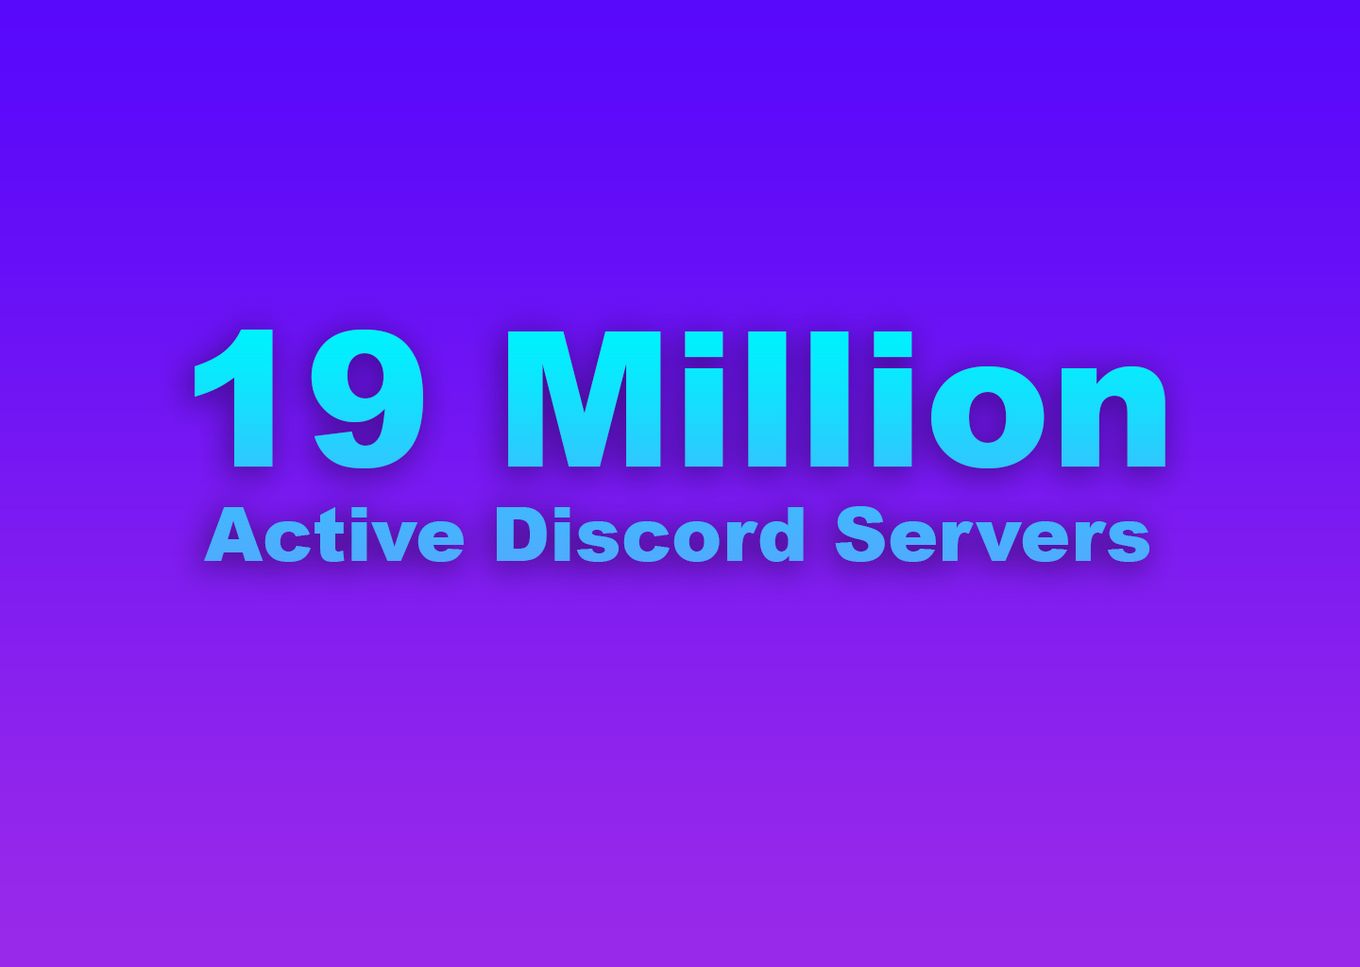 Active discord servers